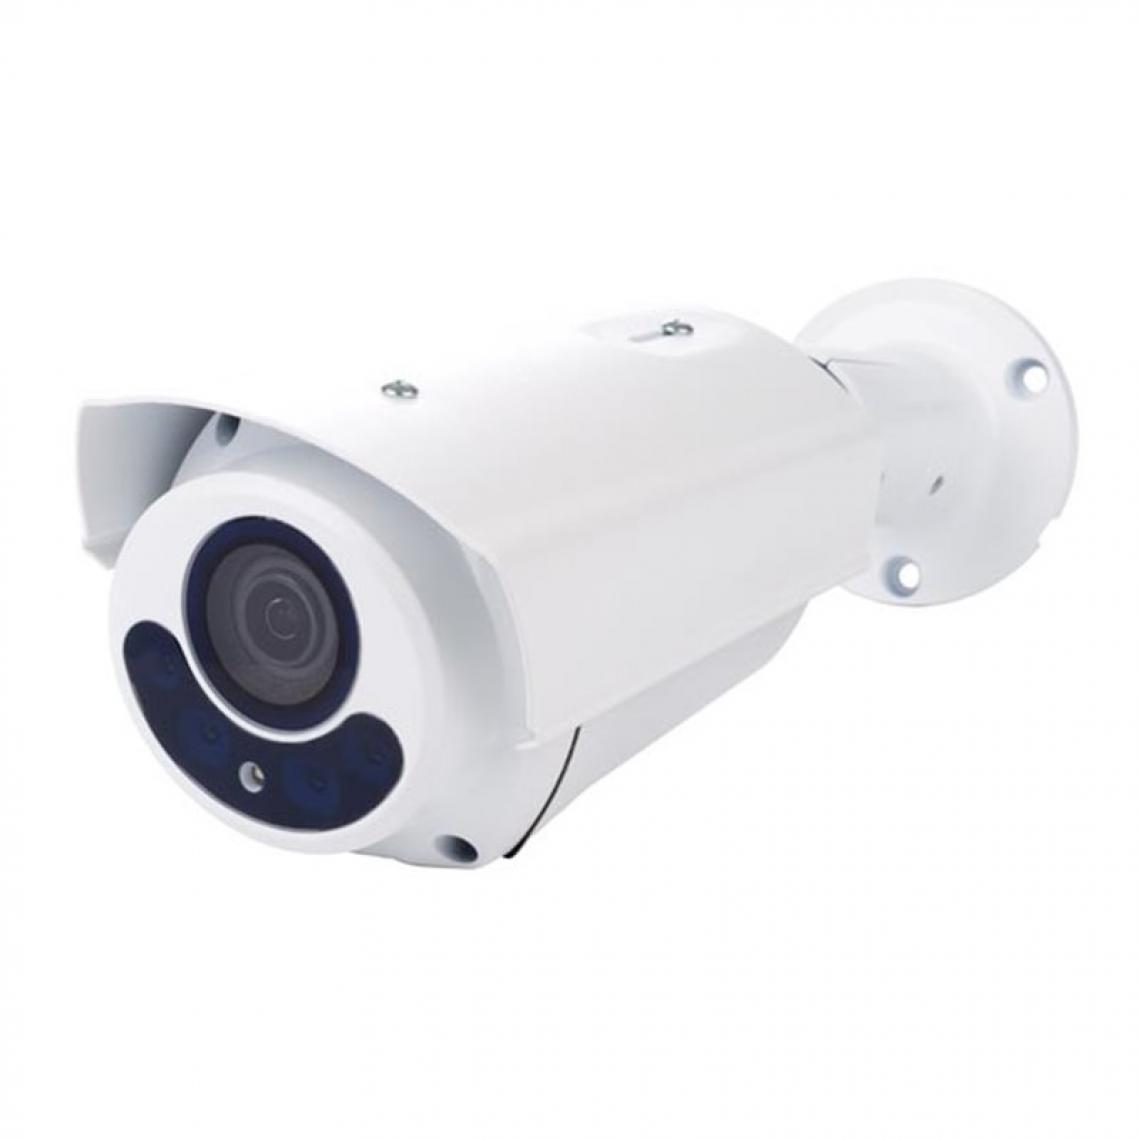 Perel - Caméra Hd Cctv - Hd-Tvi - Extérieur - Cylindrique - Ir - Lentille Varifocale Motorisée - 1080P - Blanc - Caméra de surveillance connectée